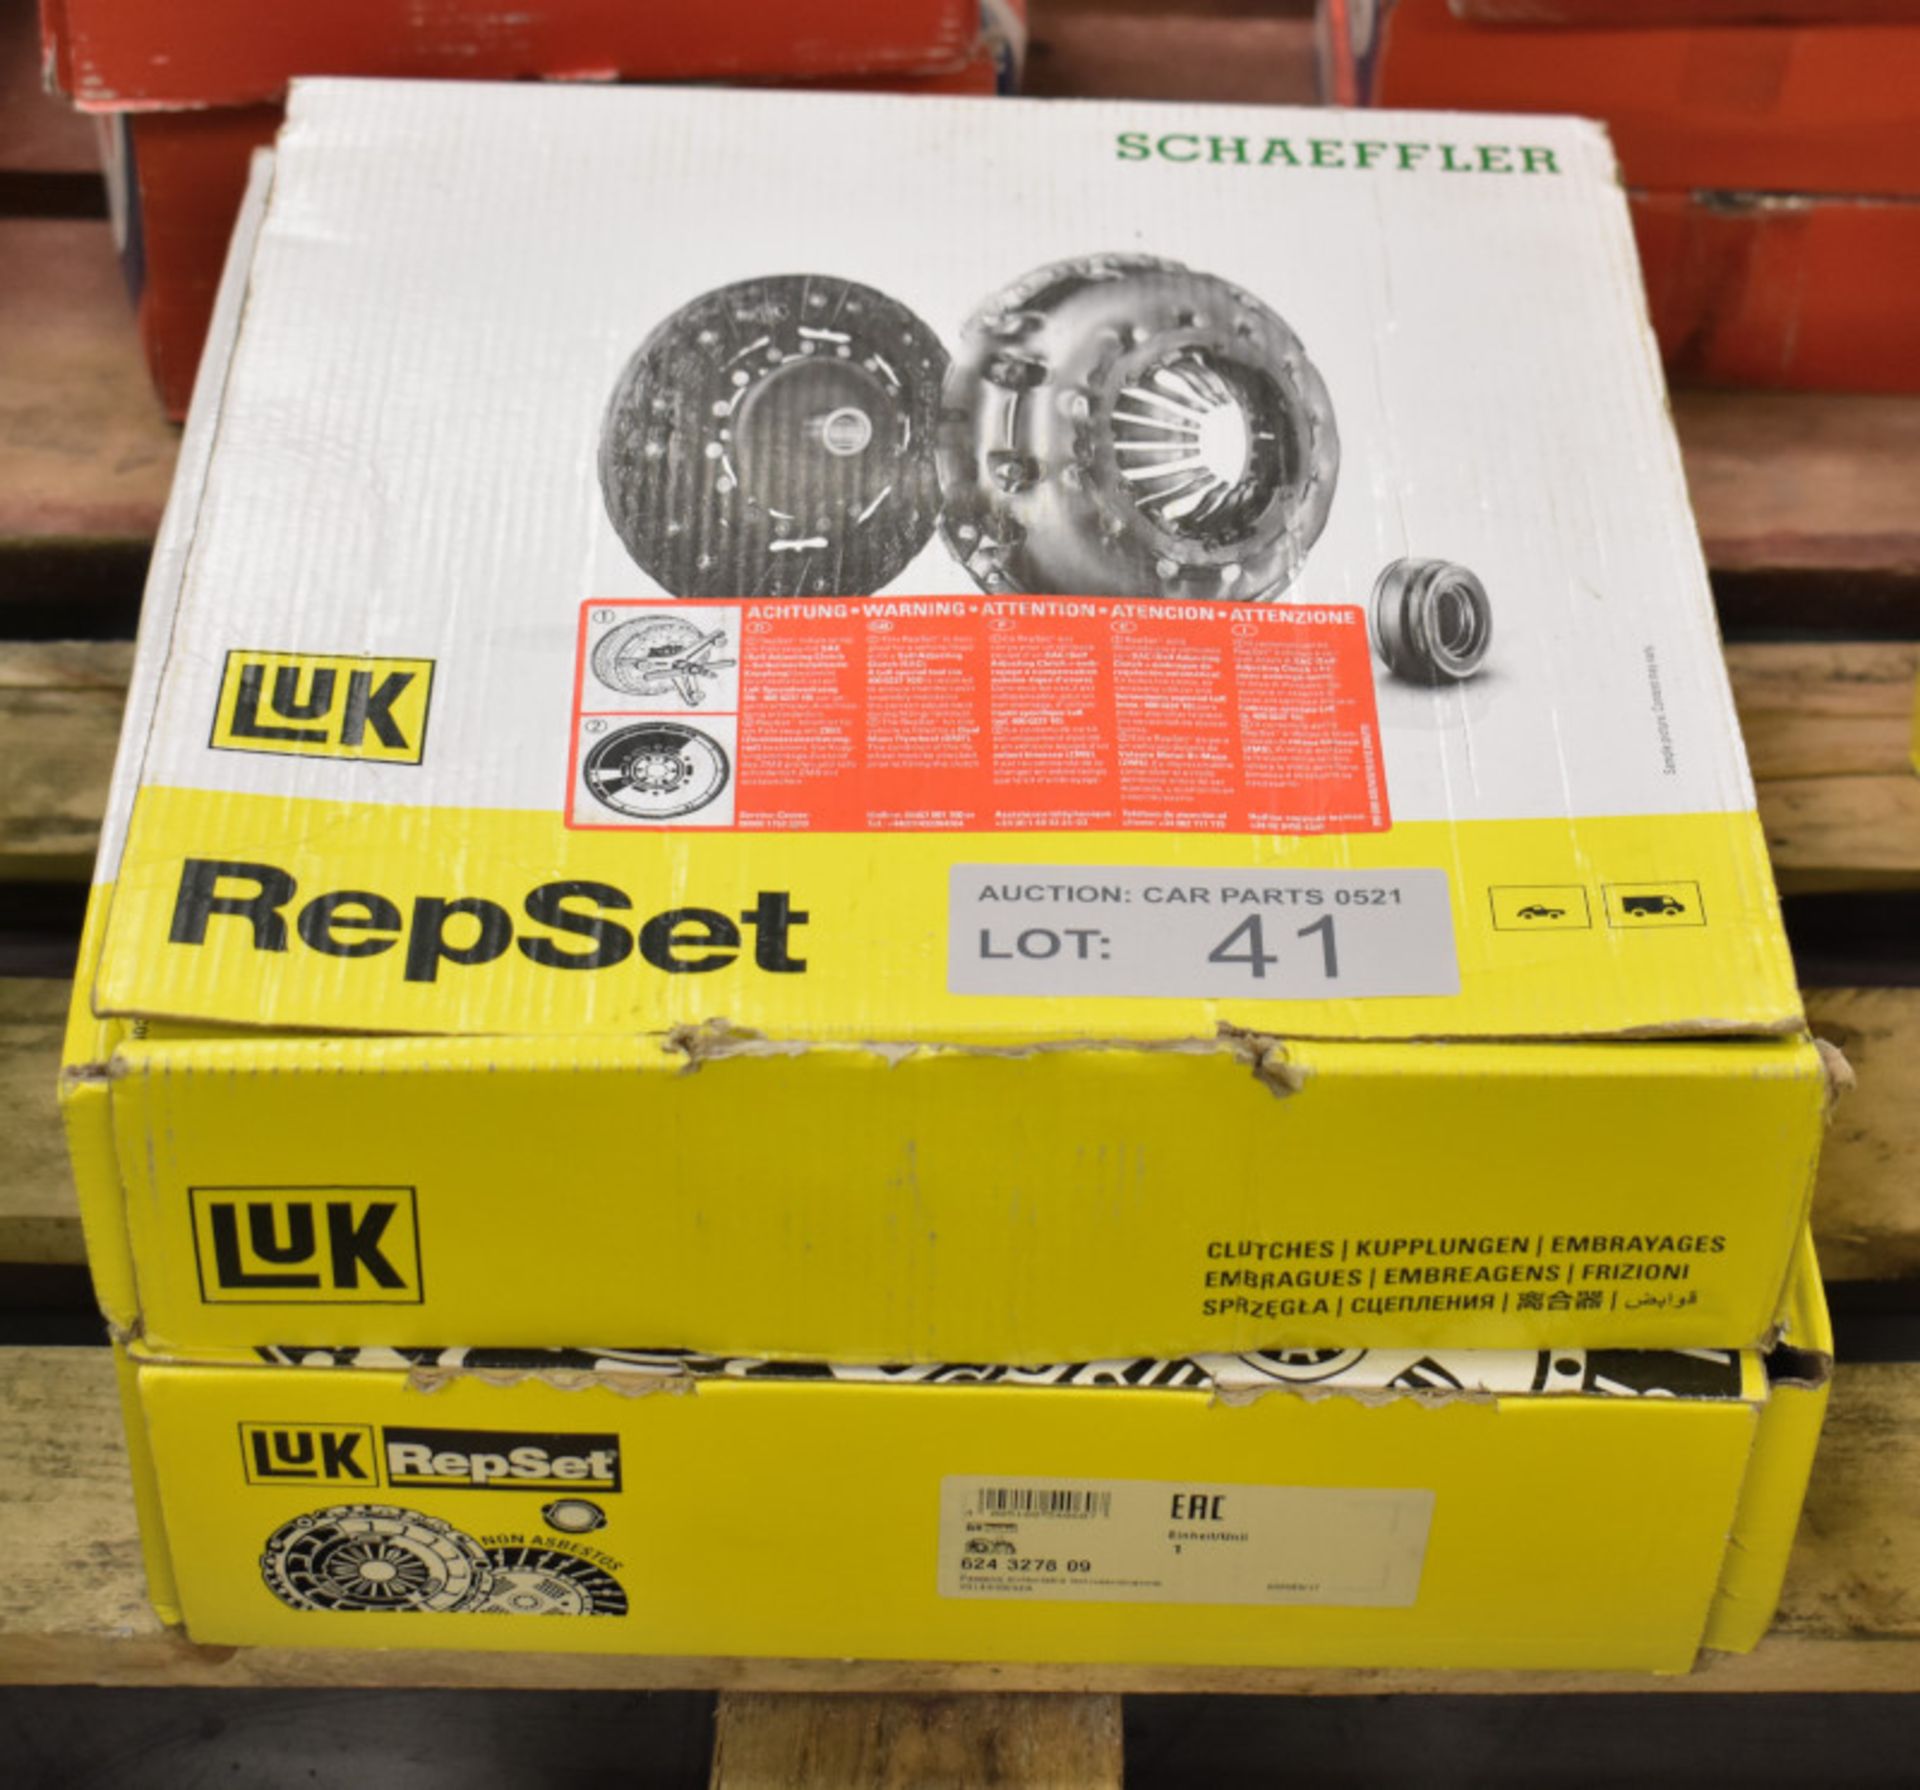 2x LUK Repset Clutch Kits (1x Schaeffler) - Models - 624 3278 09 & 623 3094 00